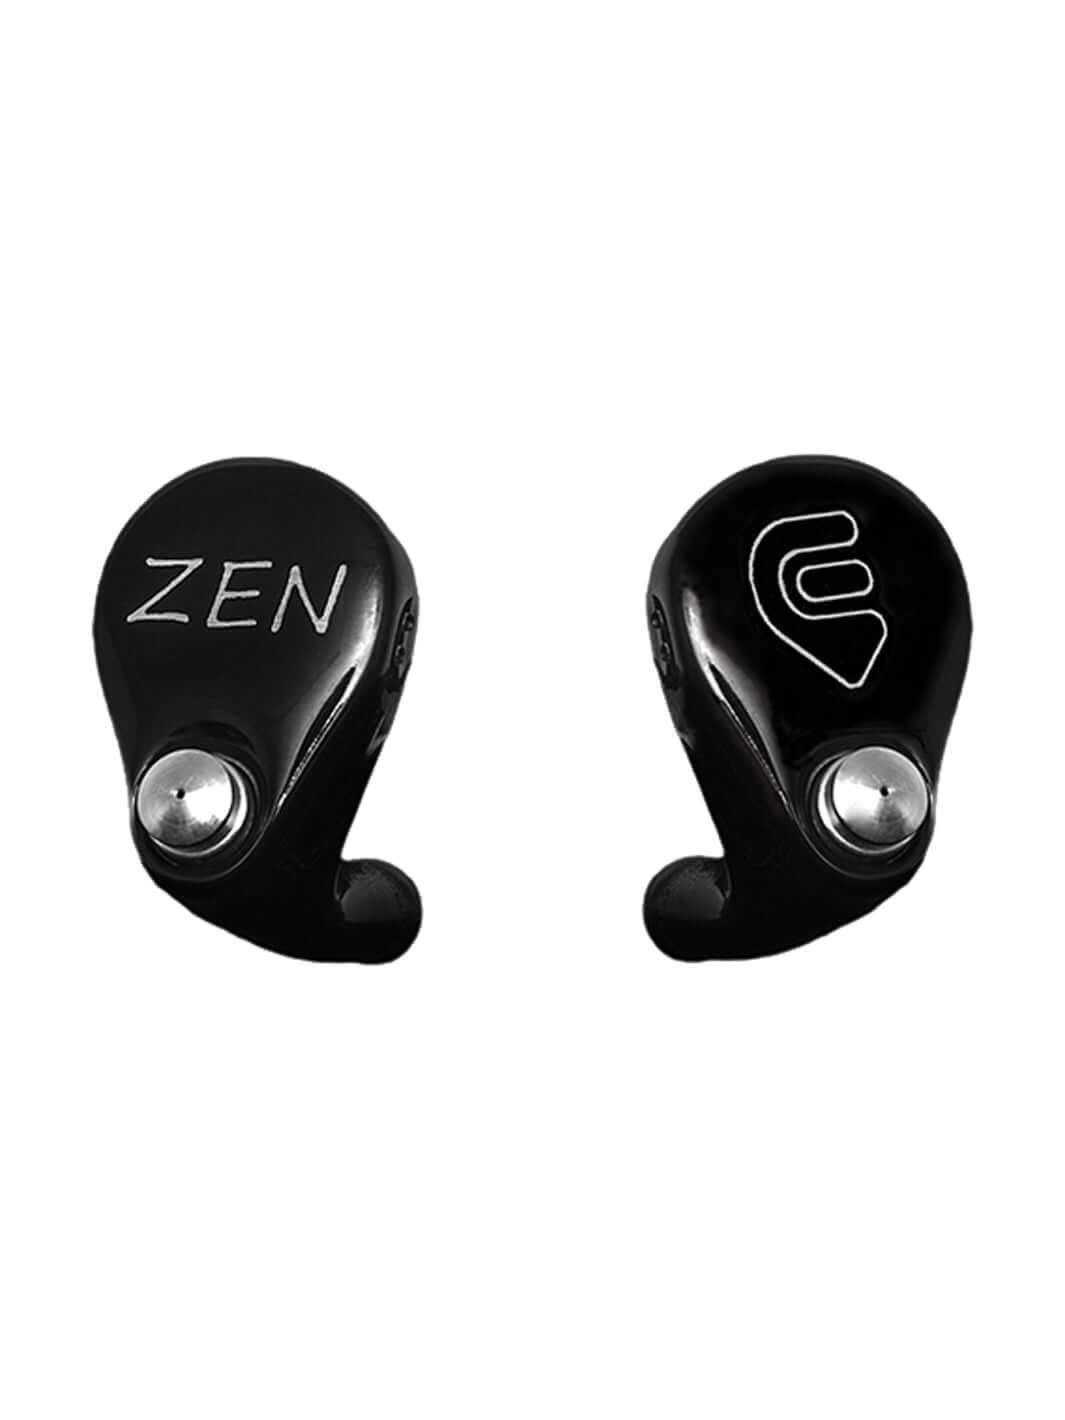 Zen 4 | InEarz Audio